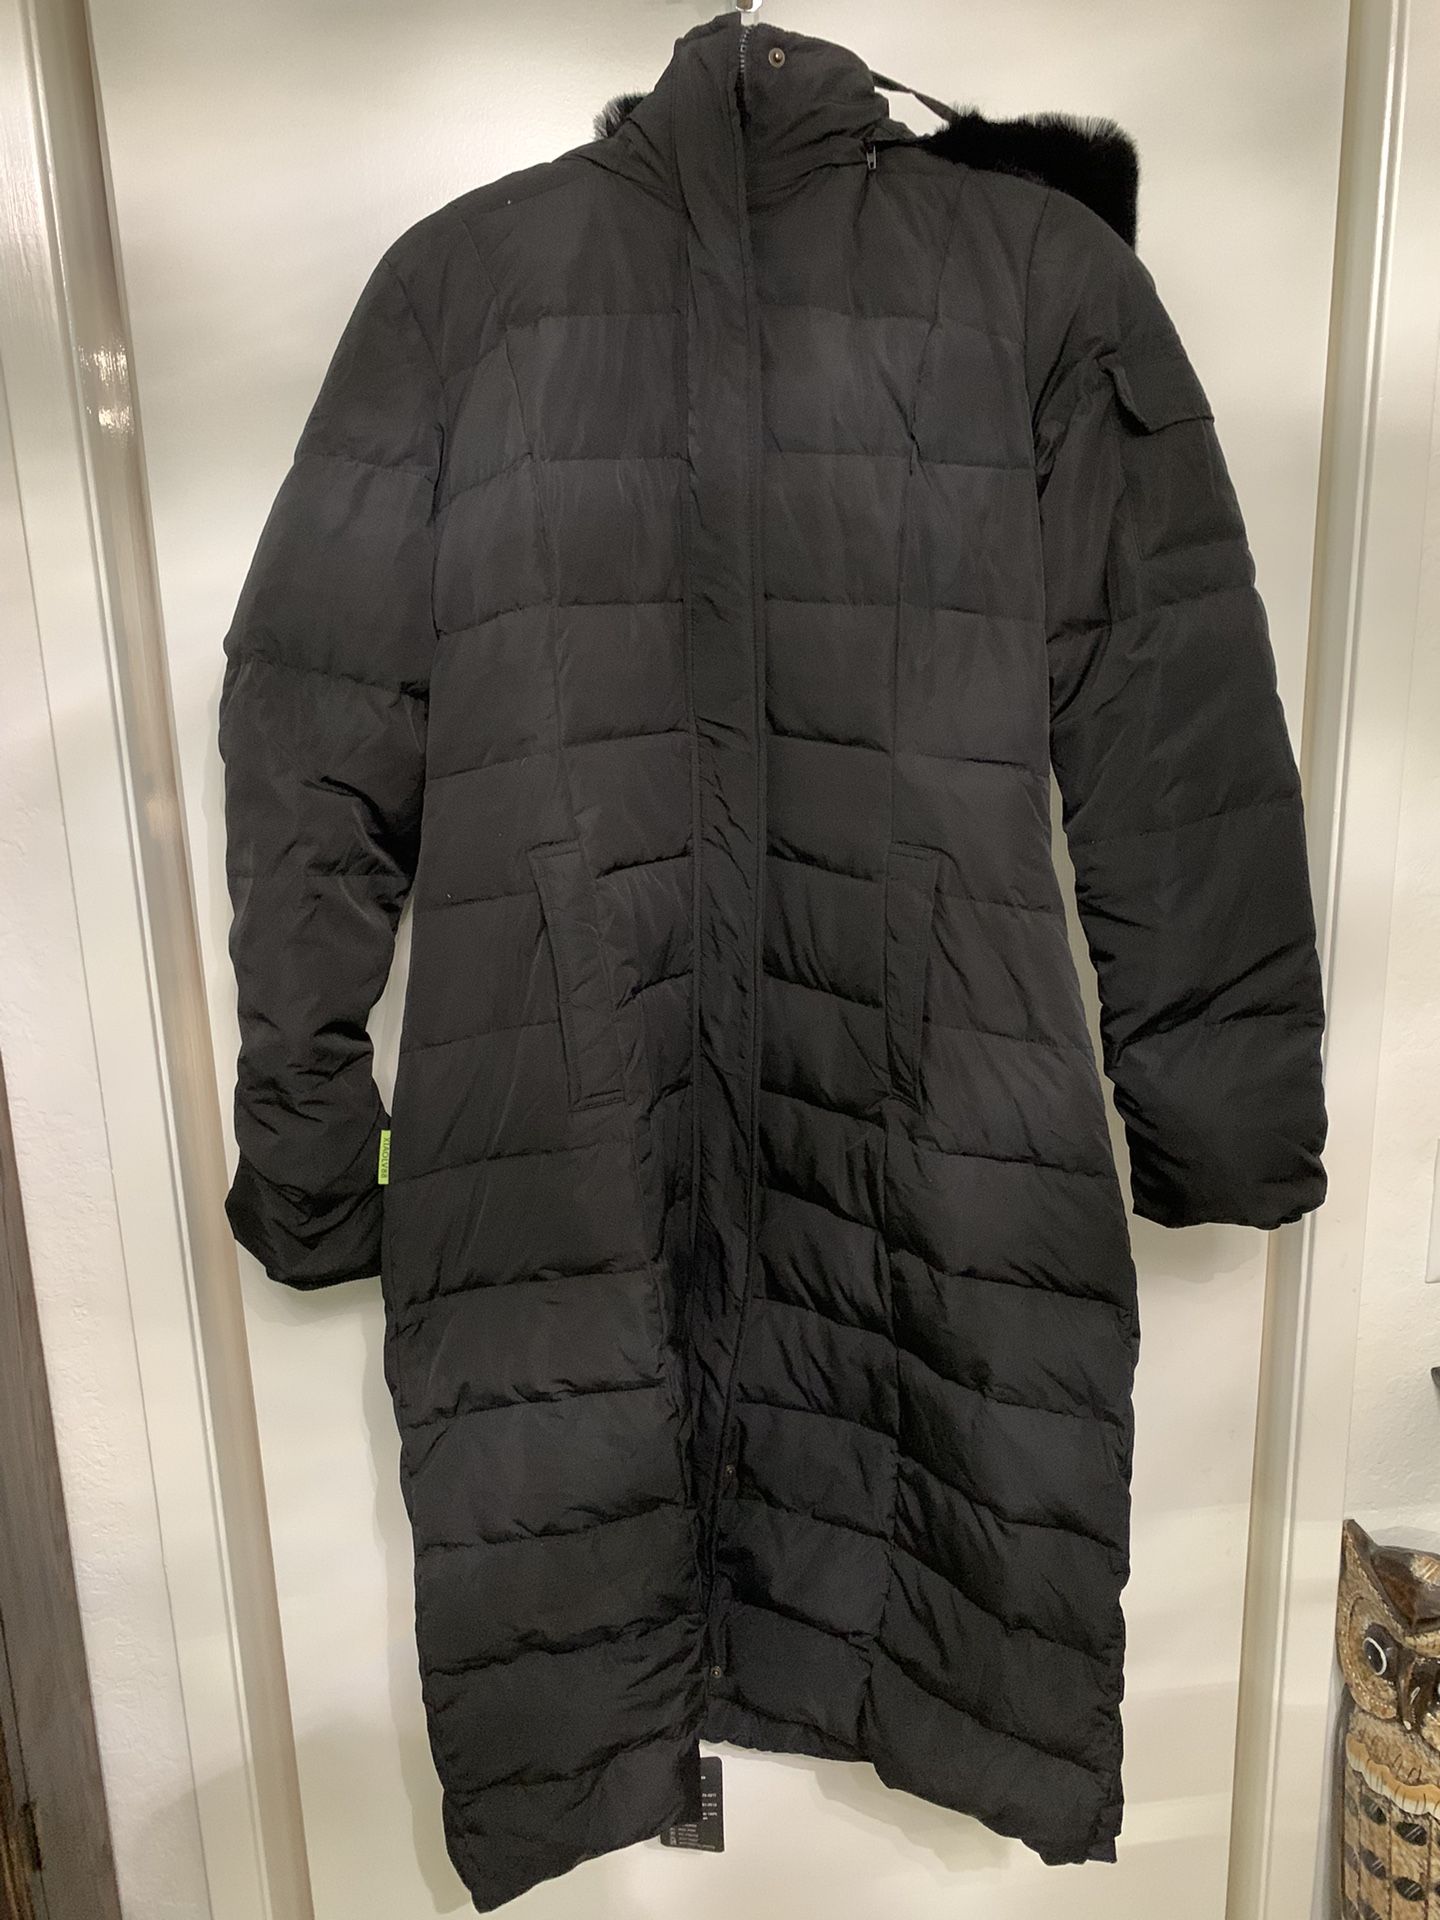 Women’s Size Medium Down Parka Jacket New 